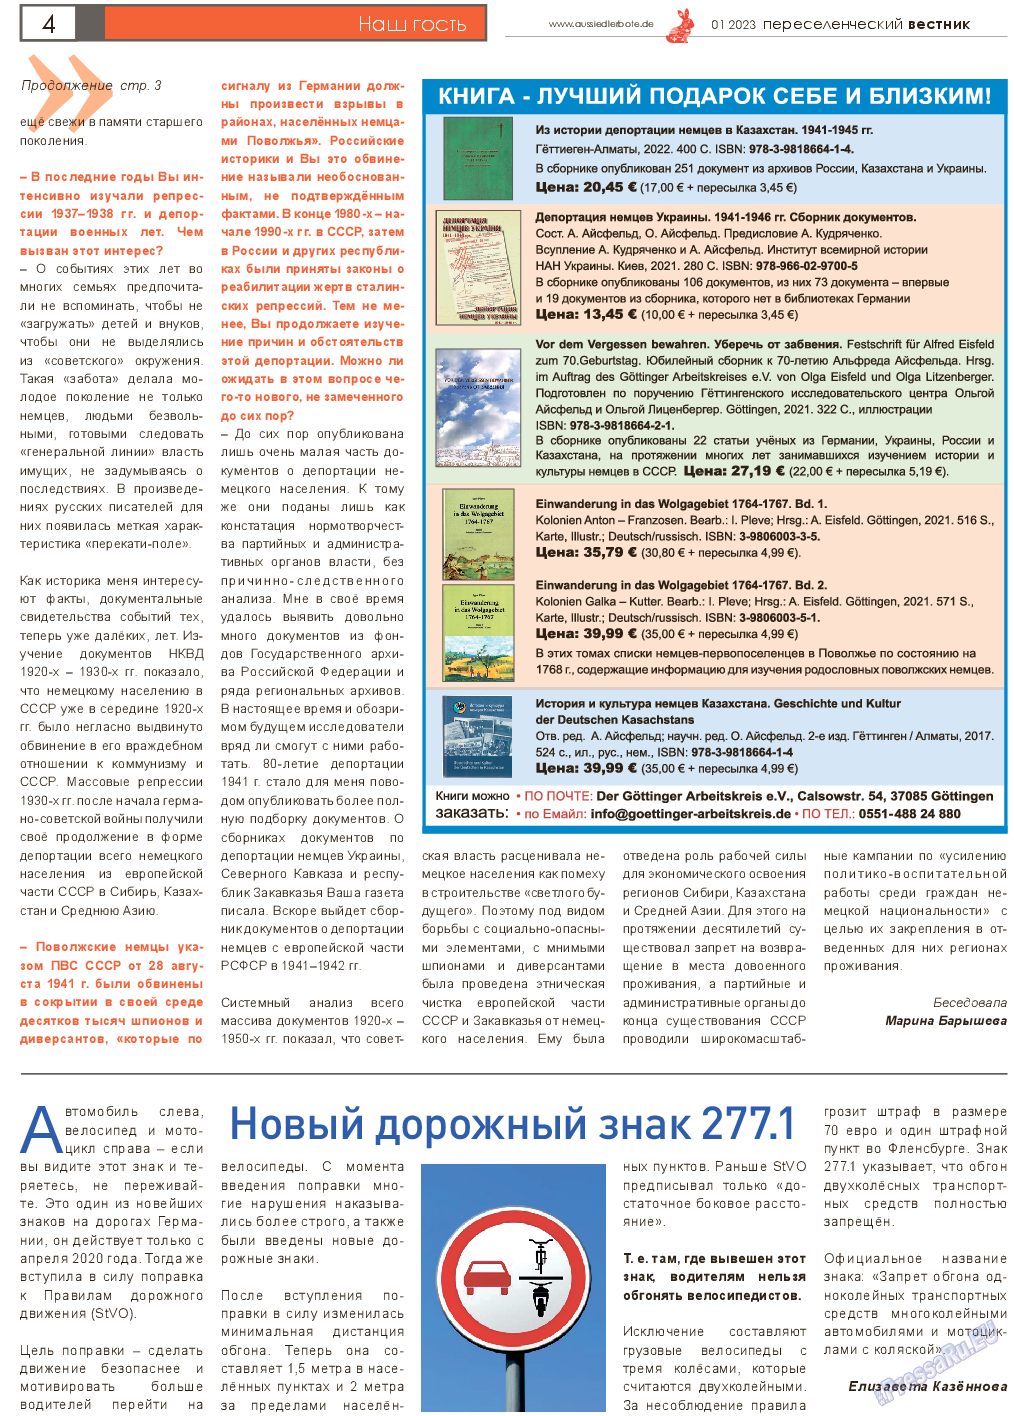 Переселенческий вестник, газета. 2023 №1 стр.4